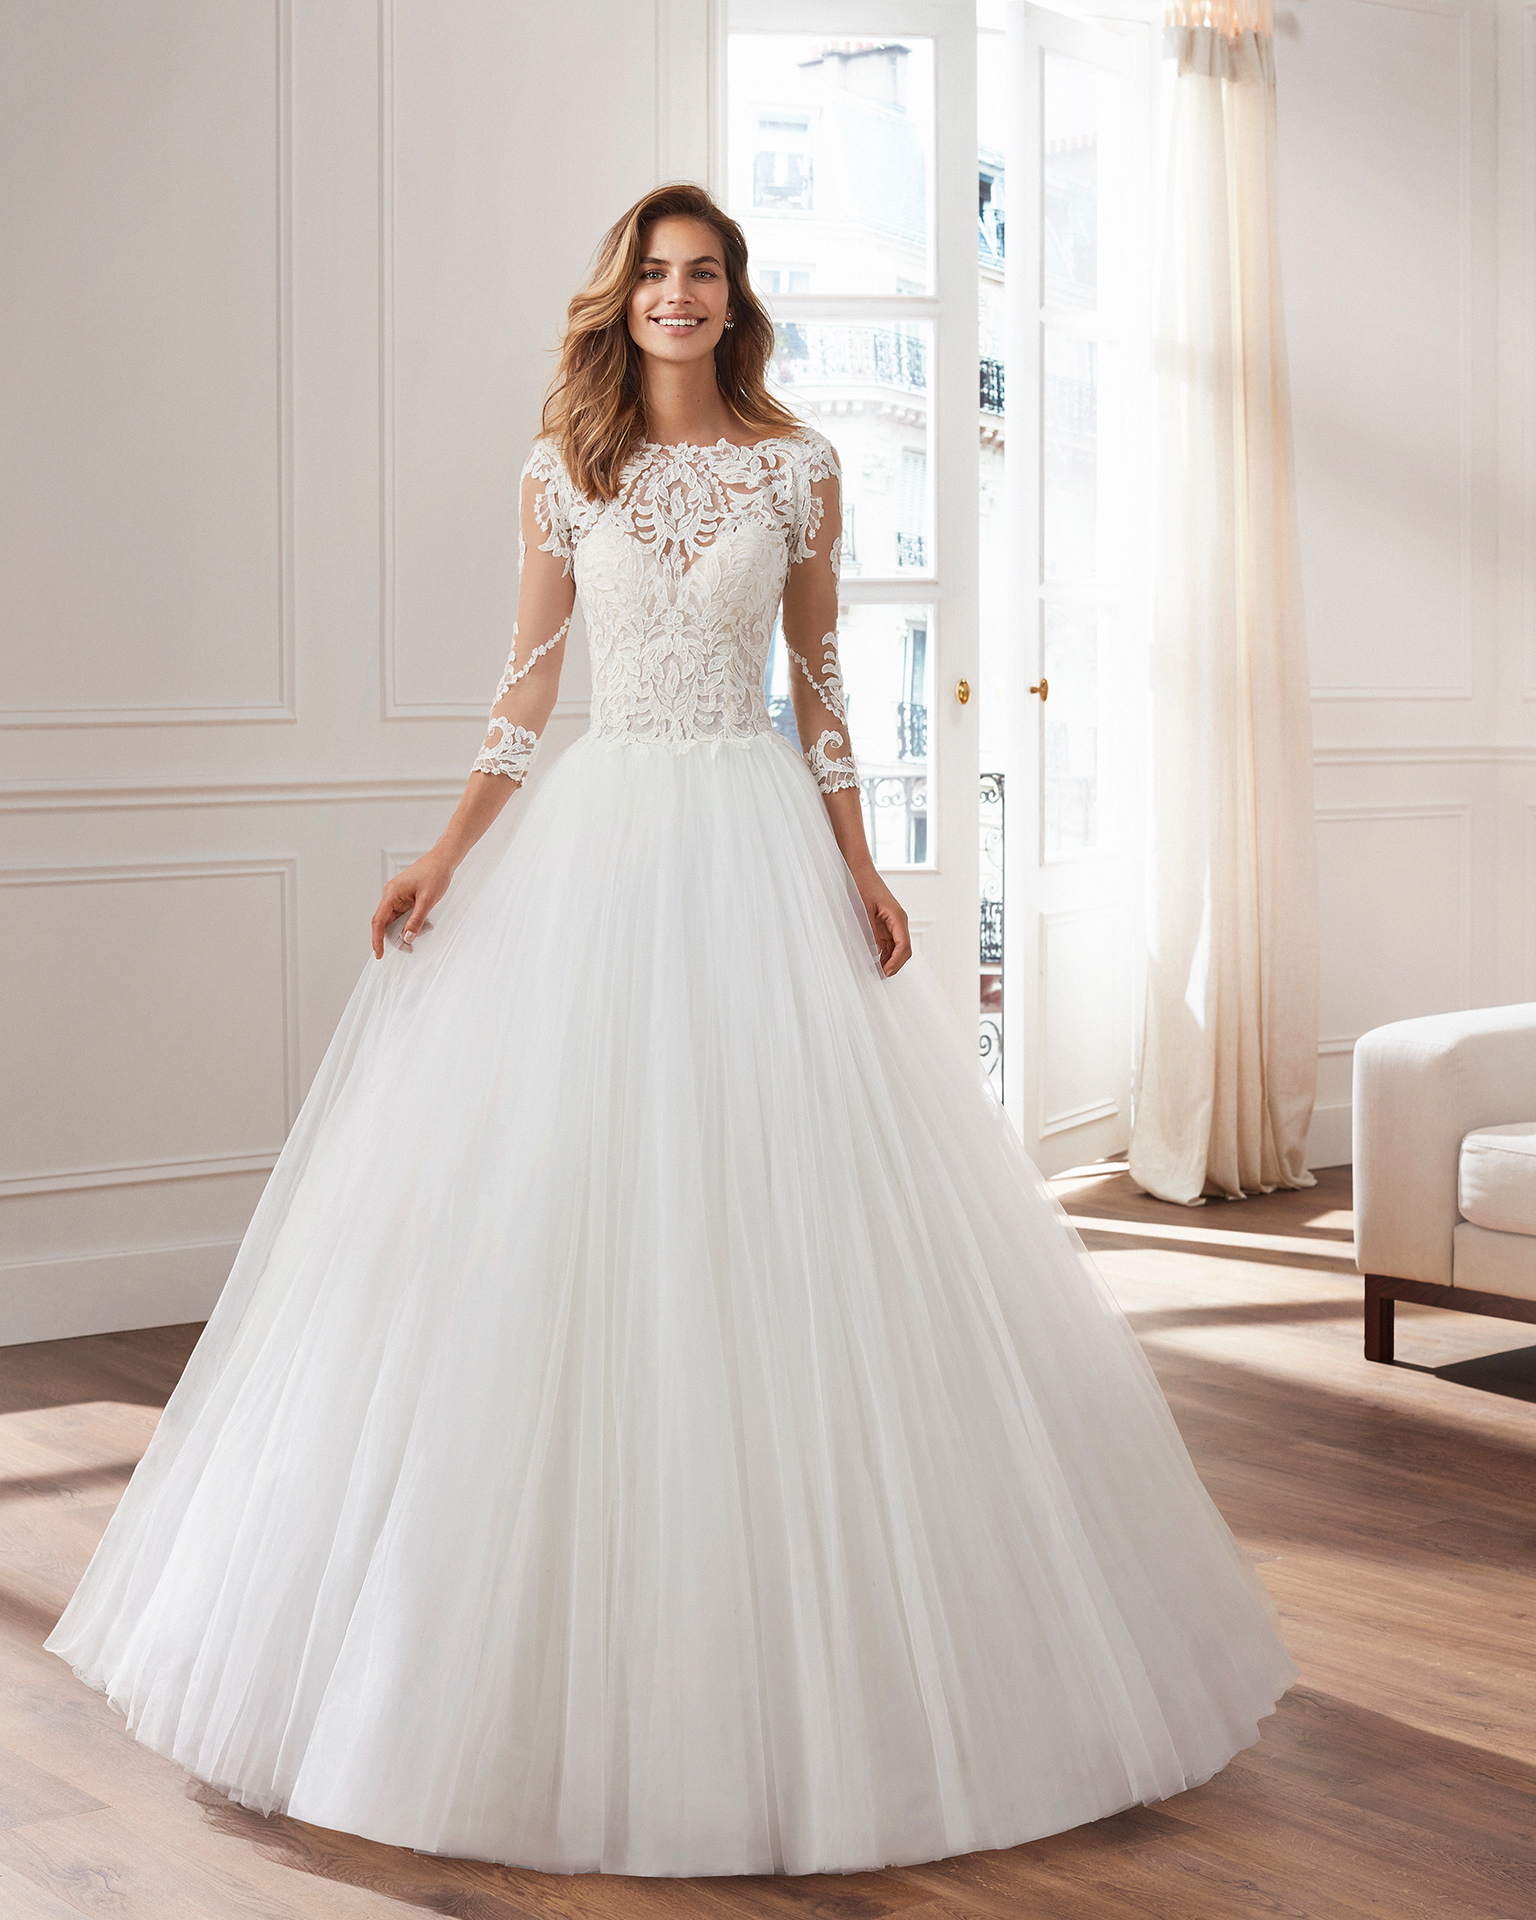 Luna Novias bridal 2019: la nuova collezione di abiti da sposa [FOTO]